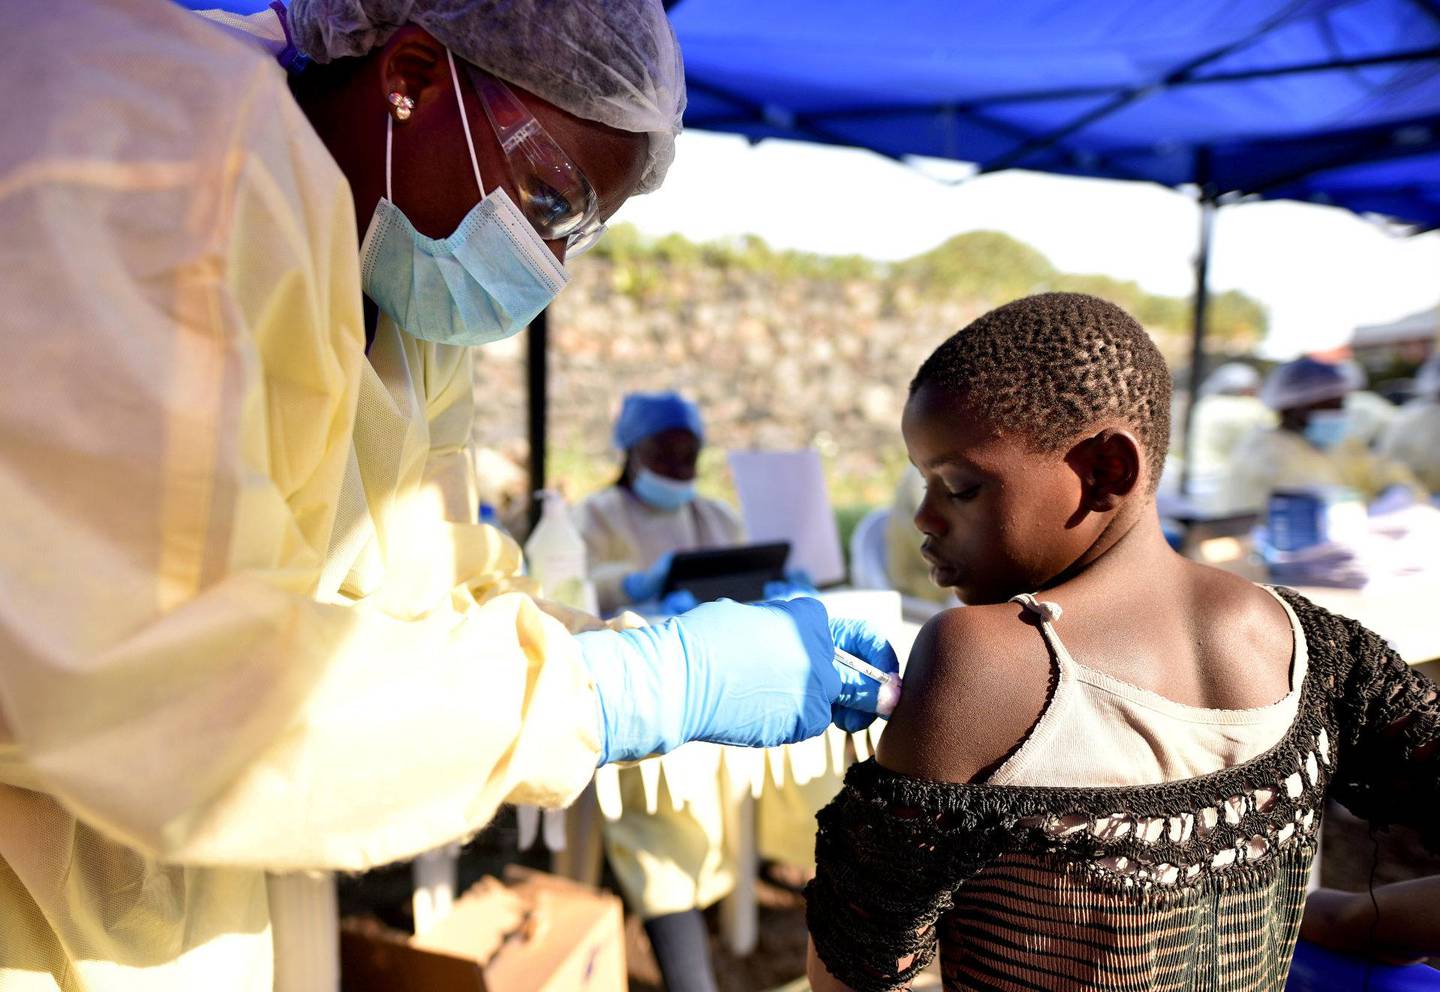 VAKSINE: Så langt har 161.000 mennesker blitt vaksinert mot ebola.FOTO: OLIVIA ACLAND/NTB SCANPIX